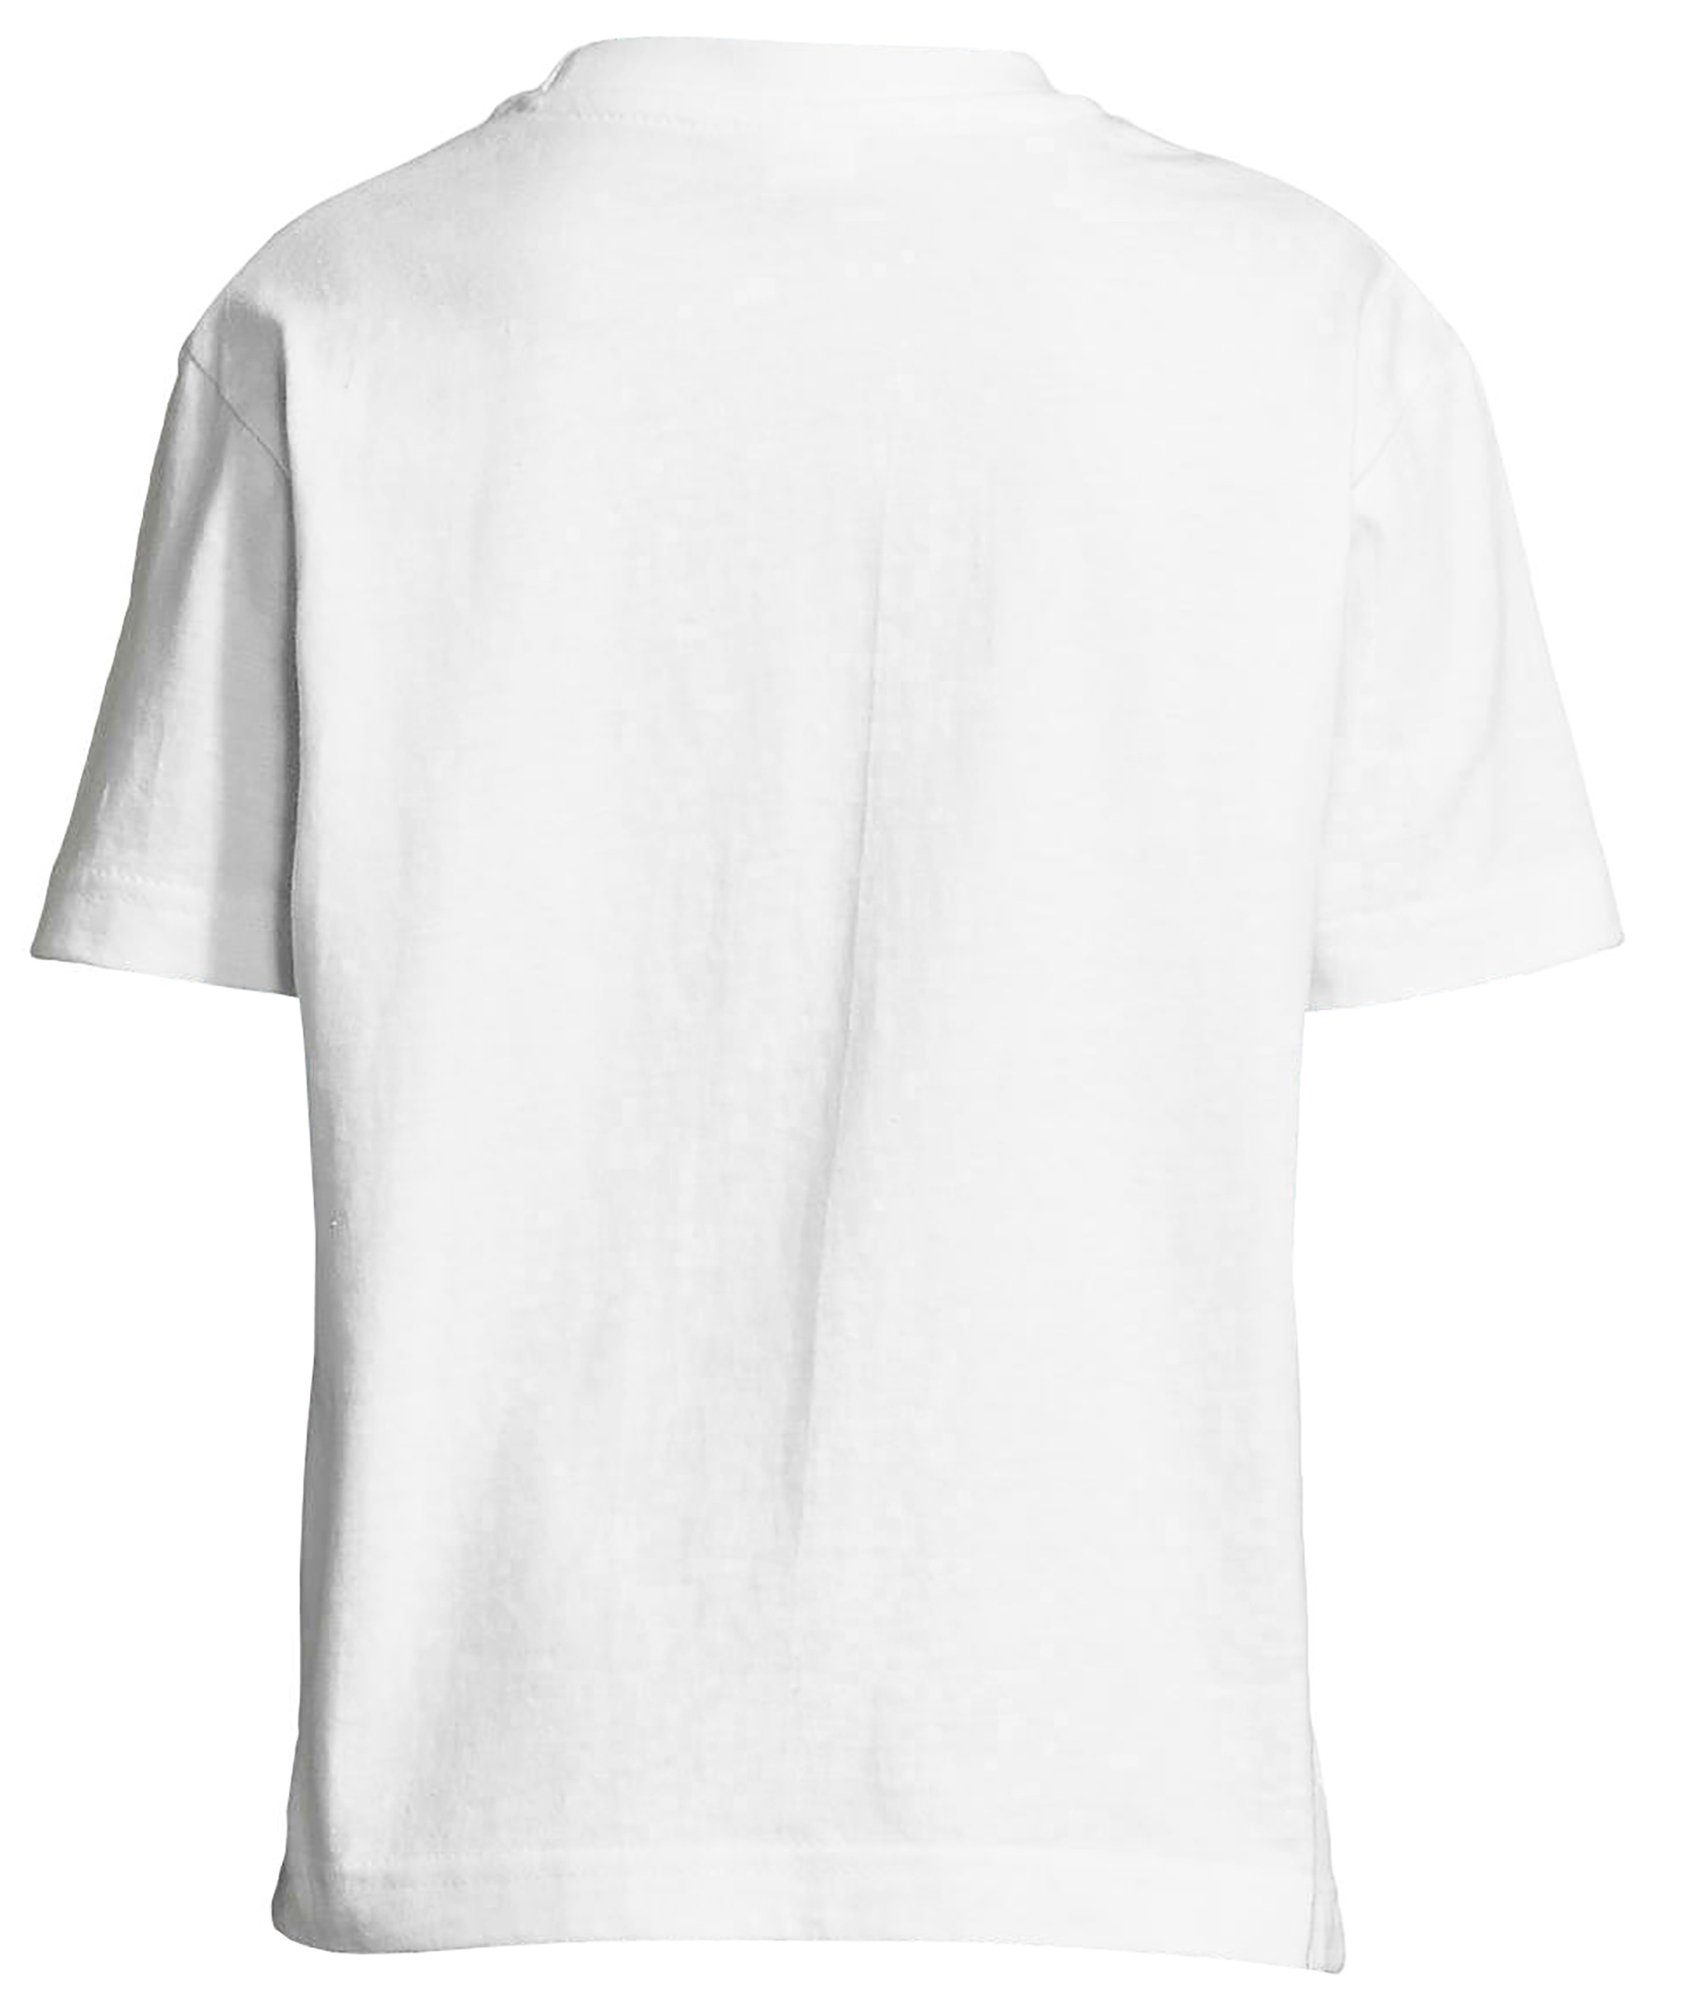 T-Shirt eine berührt Baumwollshirt Print-Shirt Aufdruck, Mädchen Hand Pferd i159 mit bedrucktes MyDesign24 weiss das